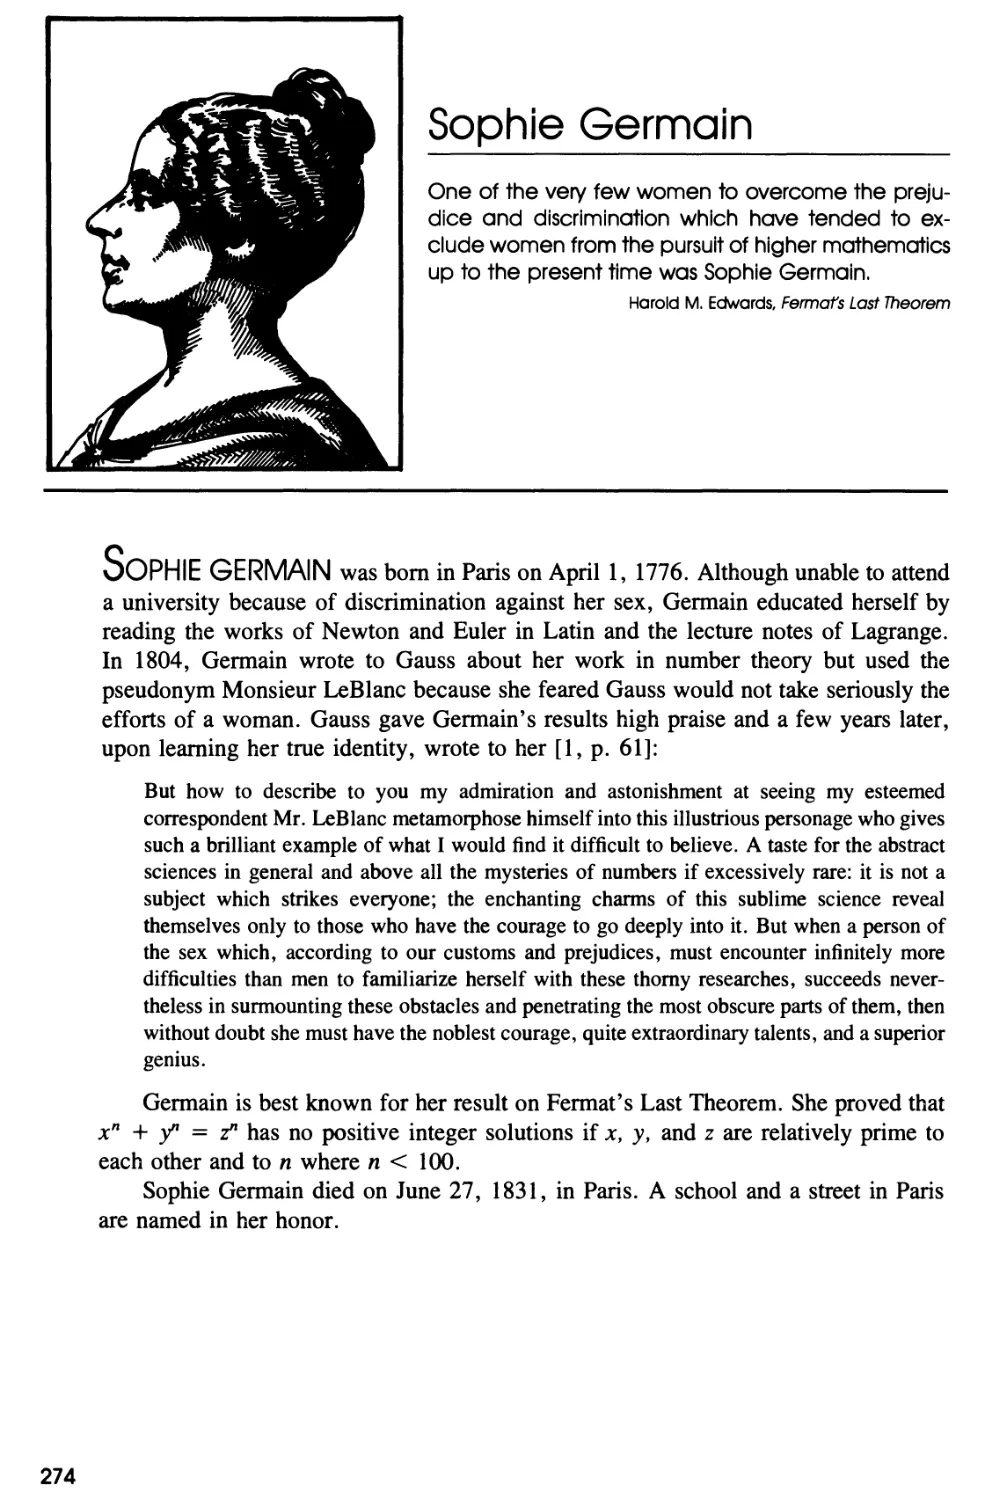 Biography of Sophie Germain